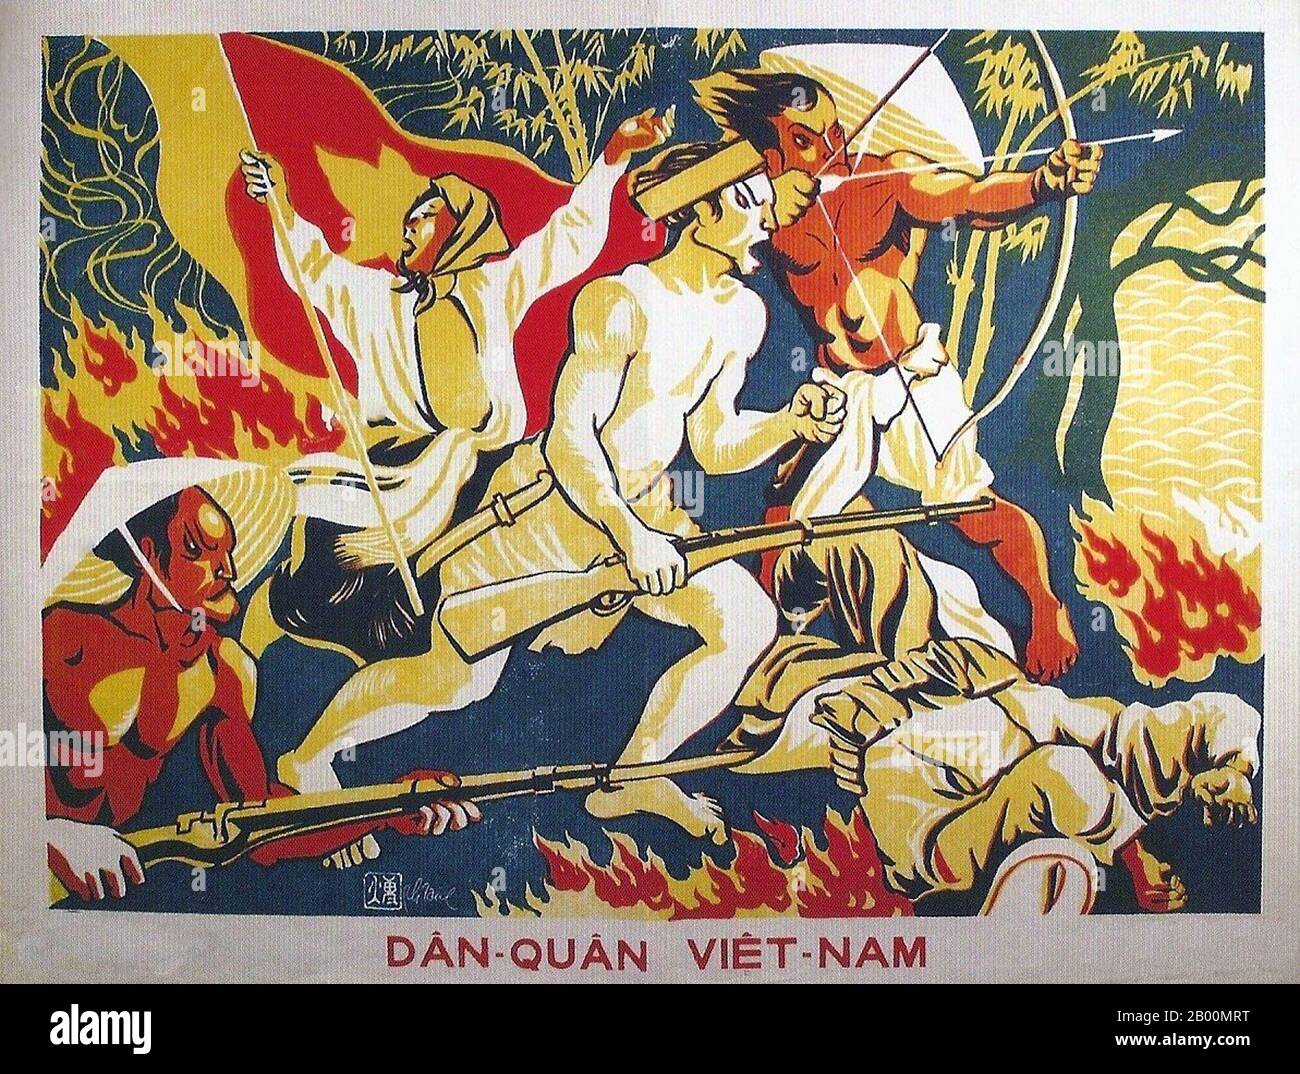 Vietnam: ân-Quân Viêt-Nam (civile e militare del Vietnam). Poster di Viet Minh, c. 1954. Il Vietnam del Nord, chiamato anche Repubblica Democratica del Vietnam (DRV) (vietnamita: Việt Nam Dân chủ Cộng hòa), è stato uno stato comunista che ha governato la metà settentrionale del Vietnam dal 1954 al 1976. In seguito agli accordi di Ginevra del 1954, il Vietnam è stato diviso al 17° parallelo. Il DRV divenne il governo del Vietnam del Nord, mentre lo Stato del Vietnam mantenne il controllo nel Sud. Foto Stock